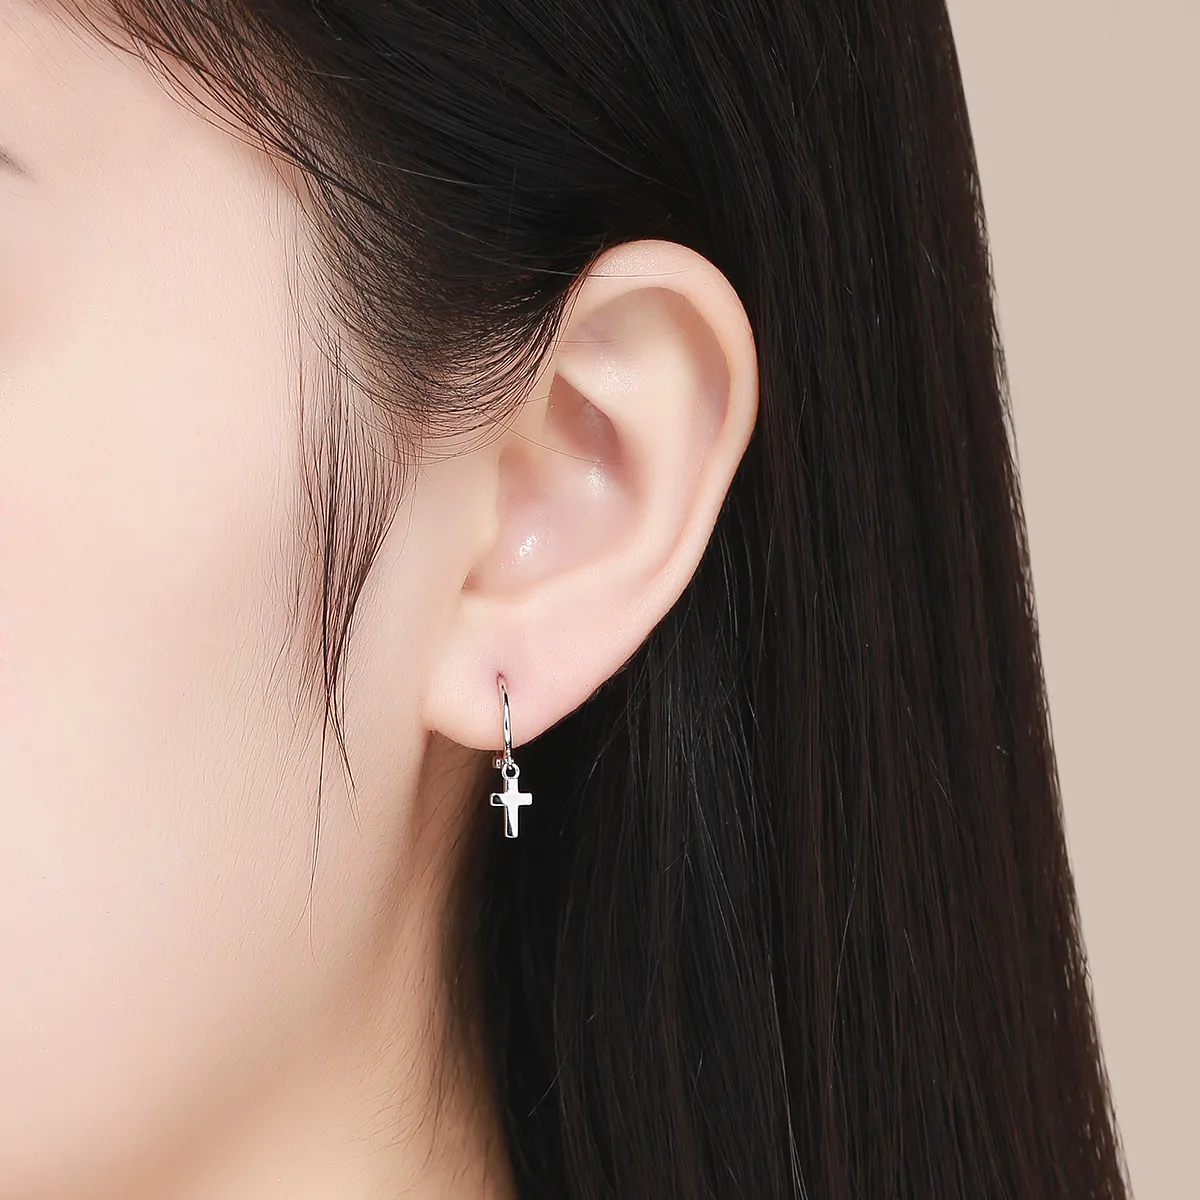 Pandora Style Silver Cross Hanging Earrings - SCE547